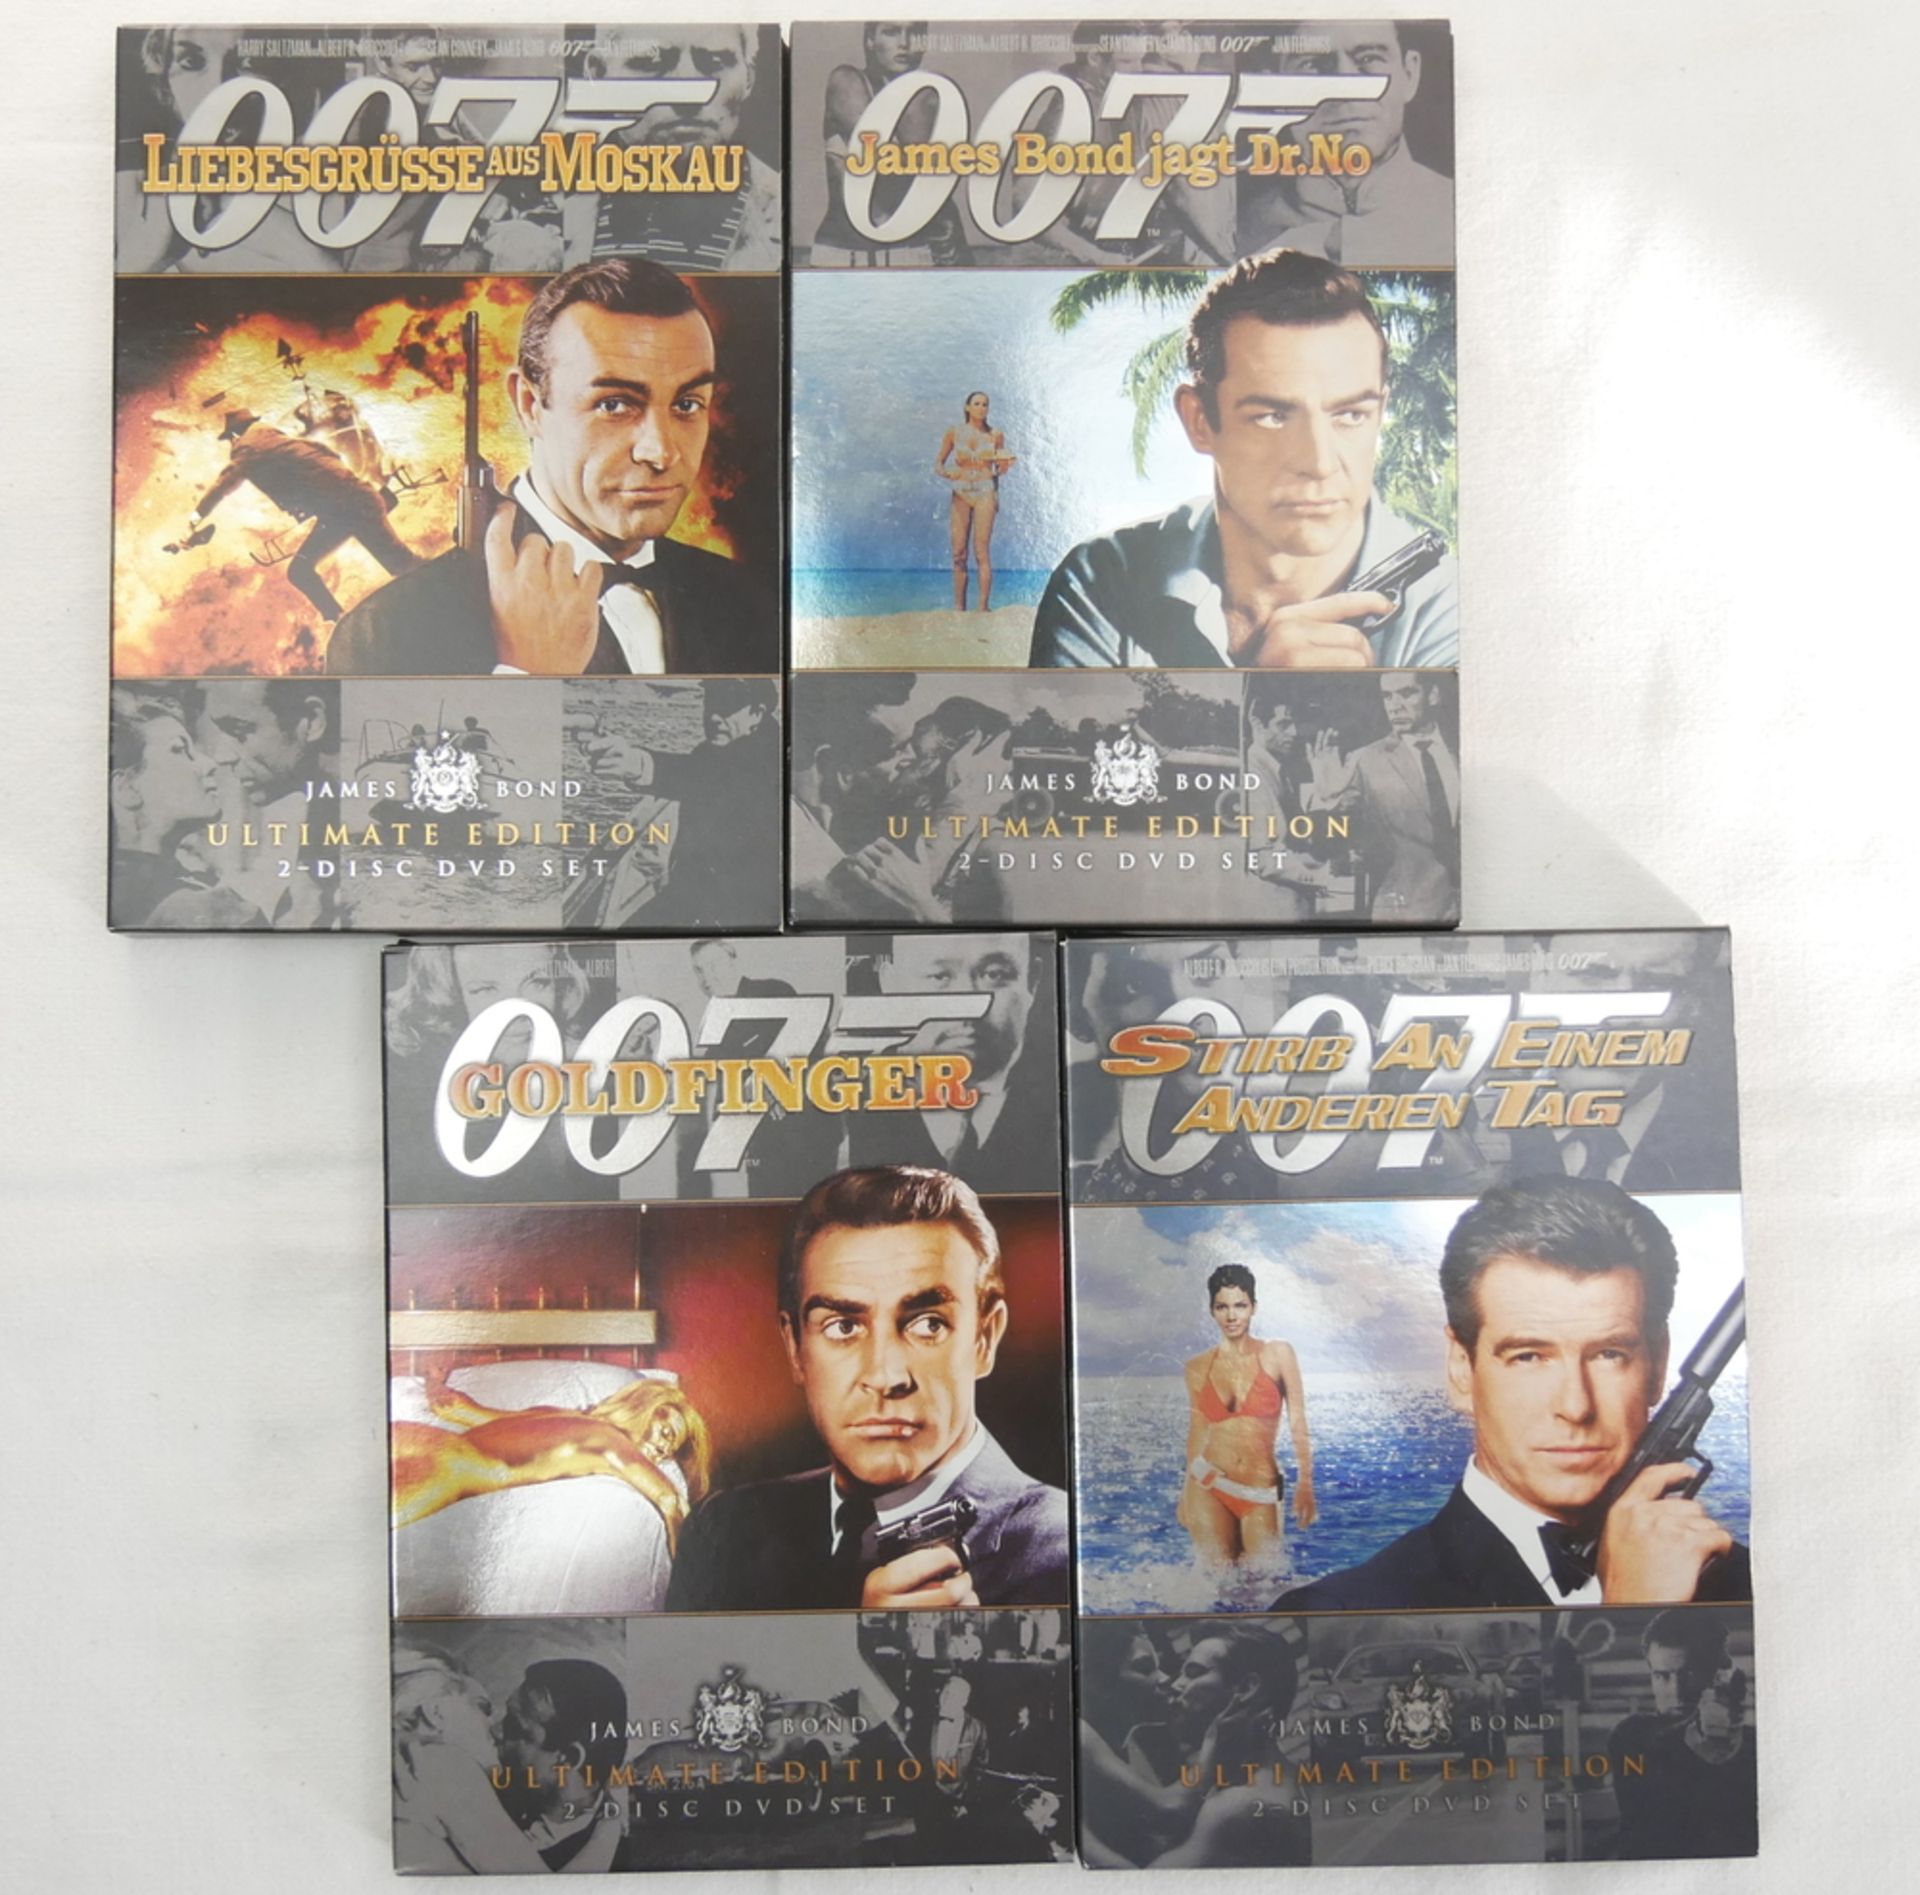 DVD´s 007, insgesamt 4 Stück, dabei Liebesgrüsse aus Moskau, James Bond jagt Dr. No, Goldfinger,